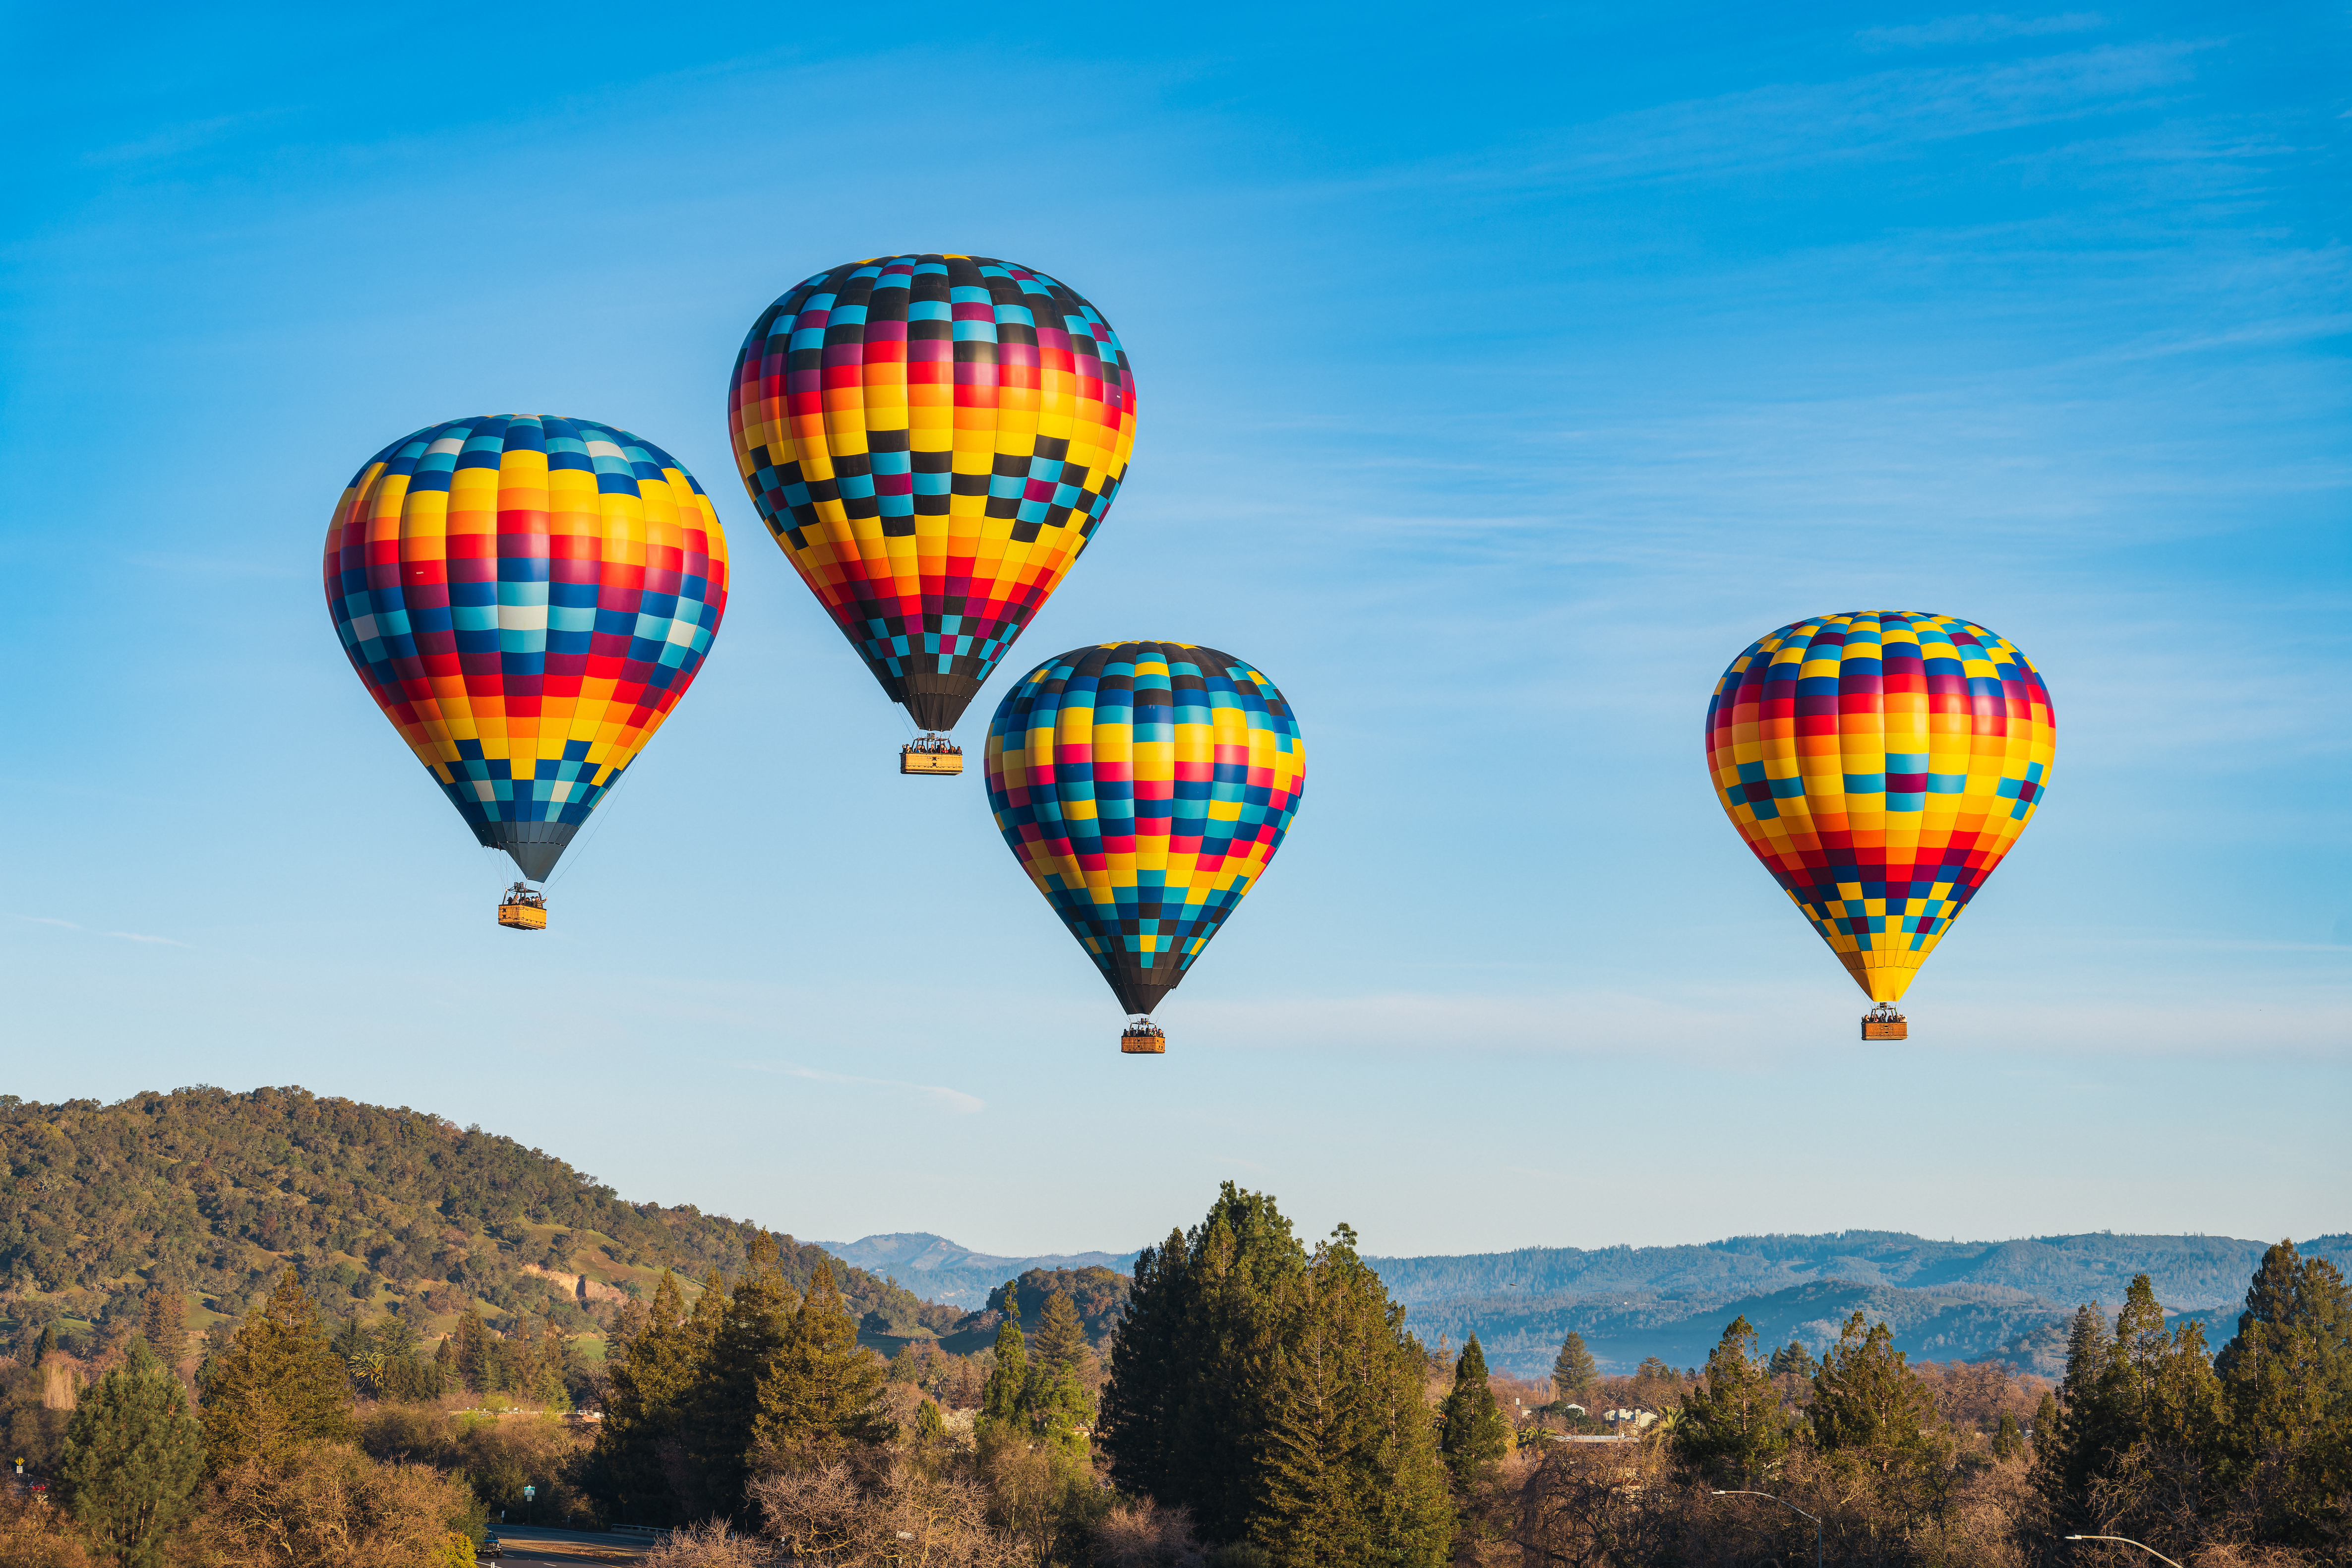 Napa Valley Aloft Balloon Rides | Yountville, CA 94599